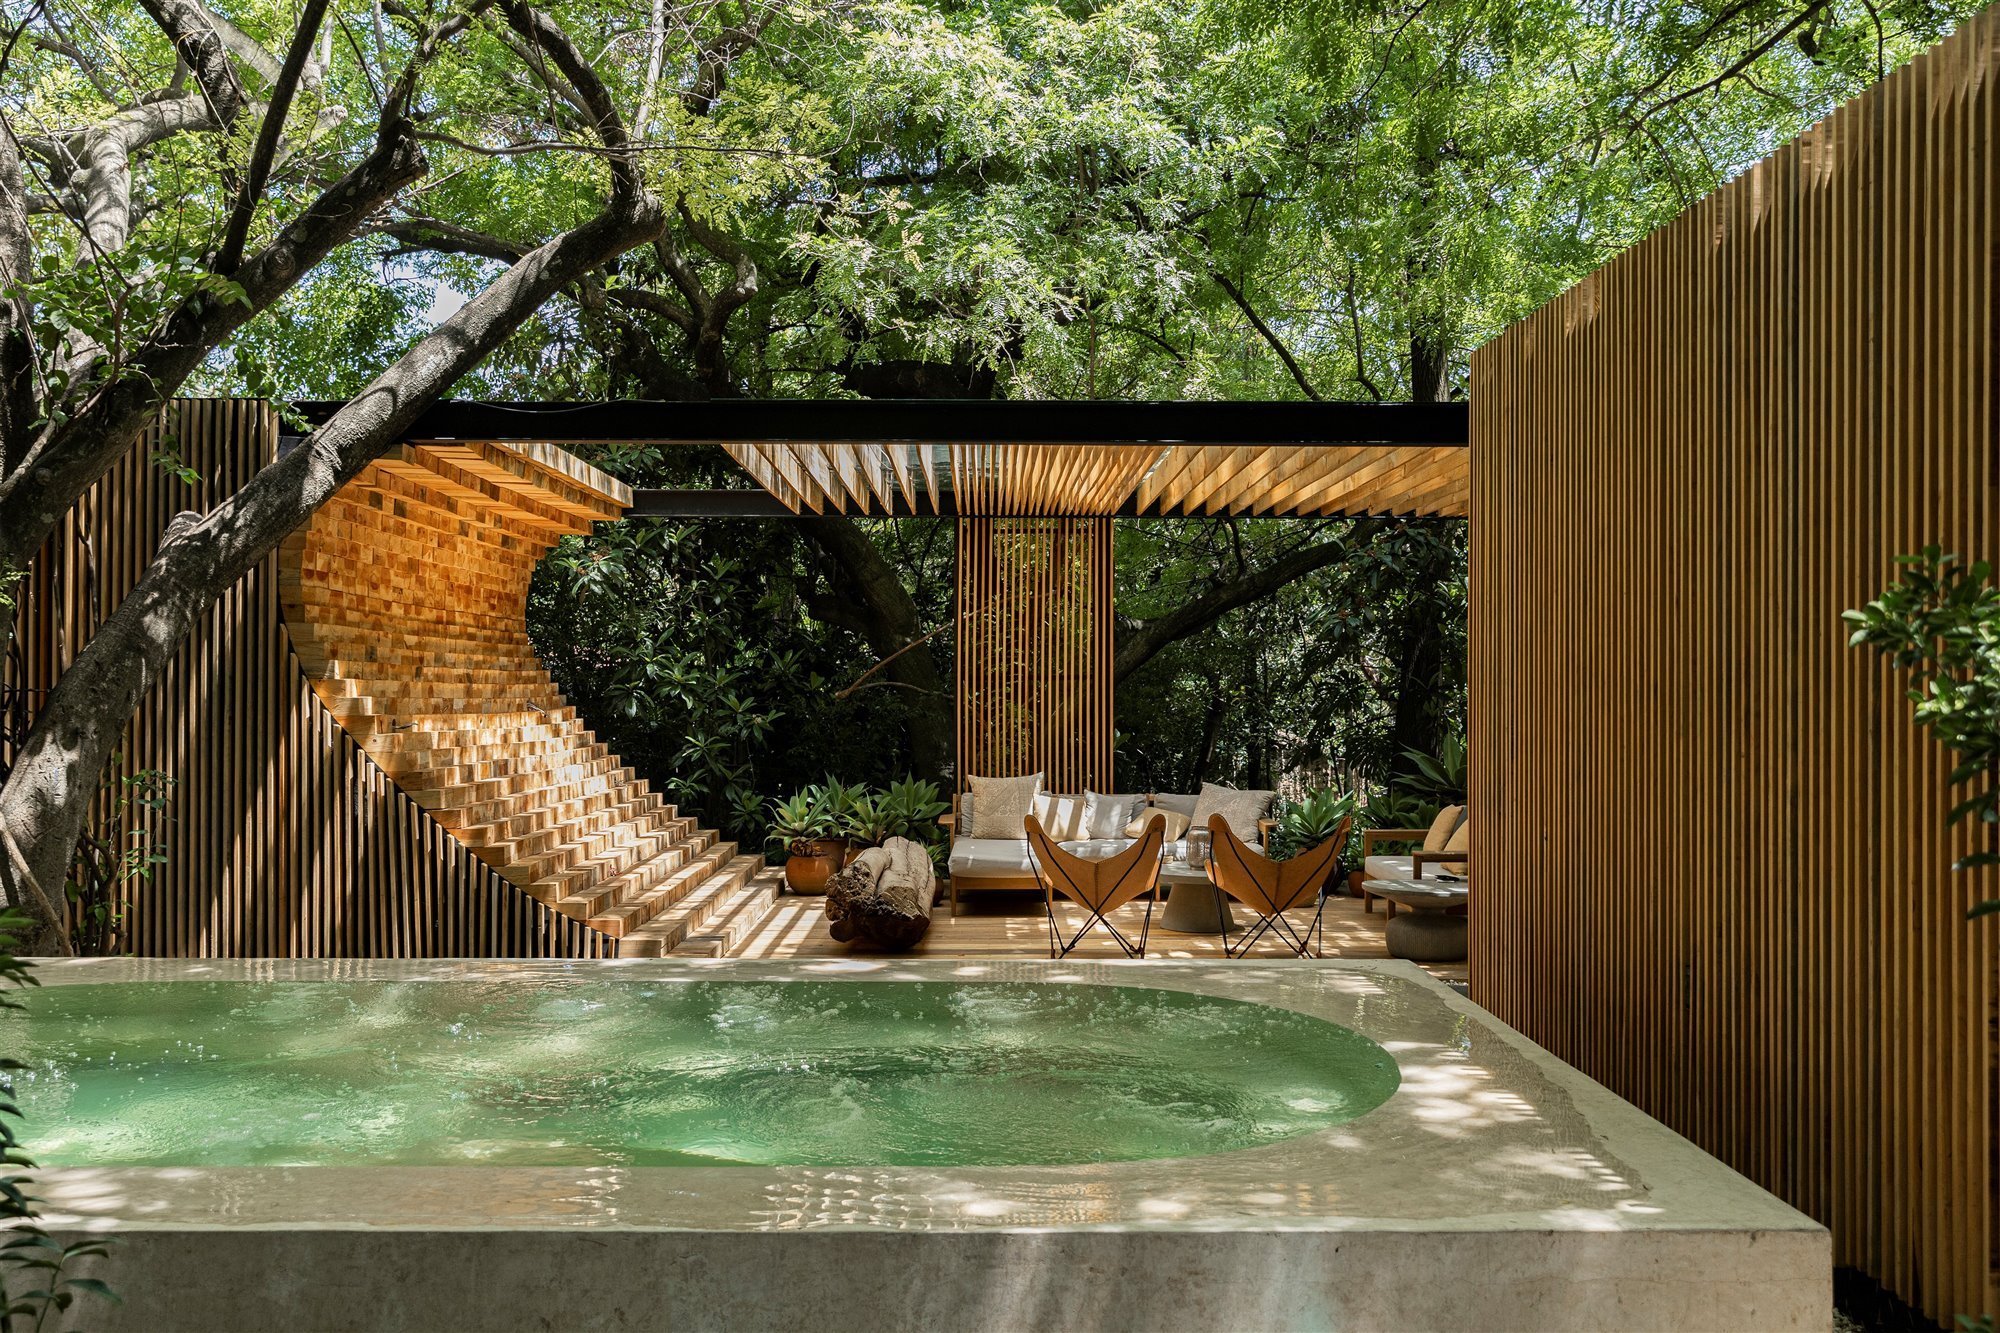 casa-moderna-en-mexico-rodeada-de-vegetacion-en-la-selva-piscina-con-tumbonas a0a6aadc 2000x1333